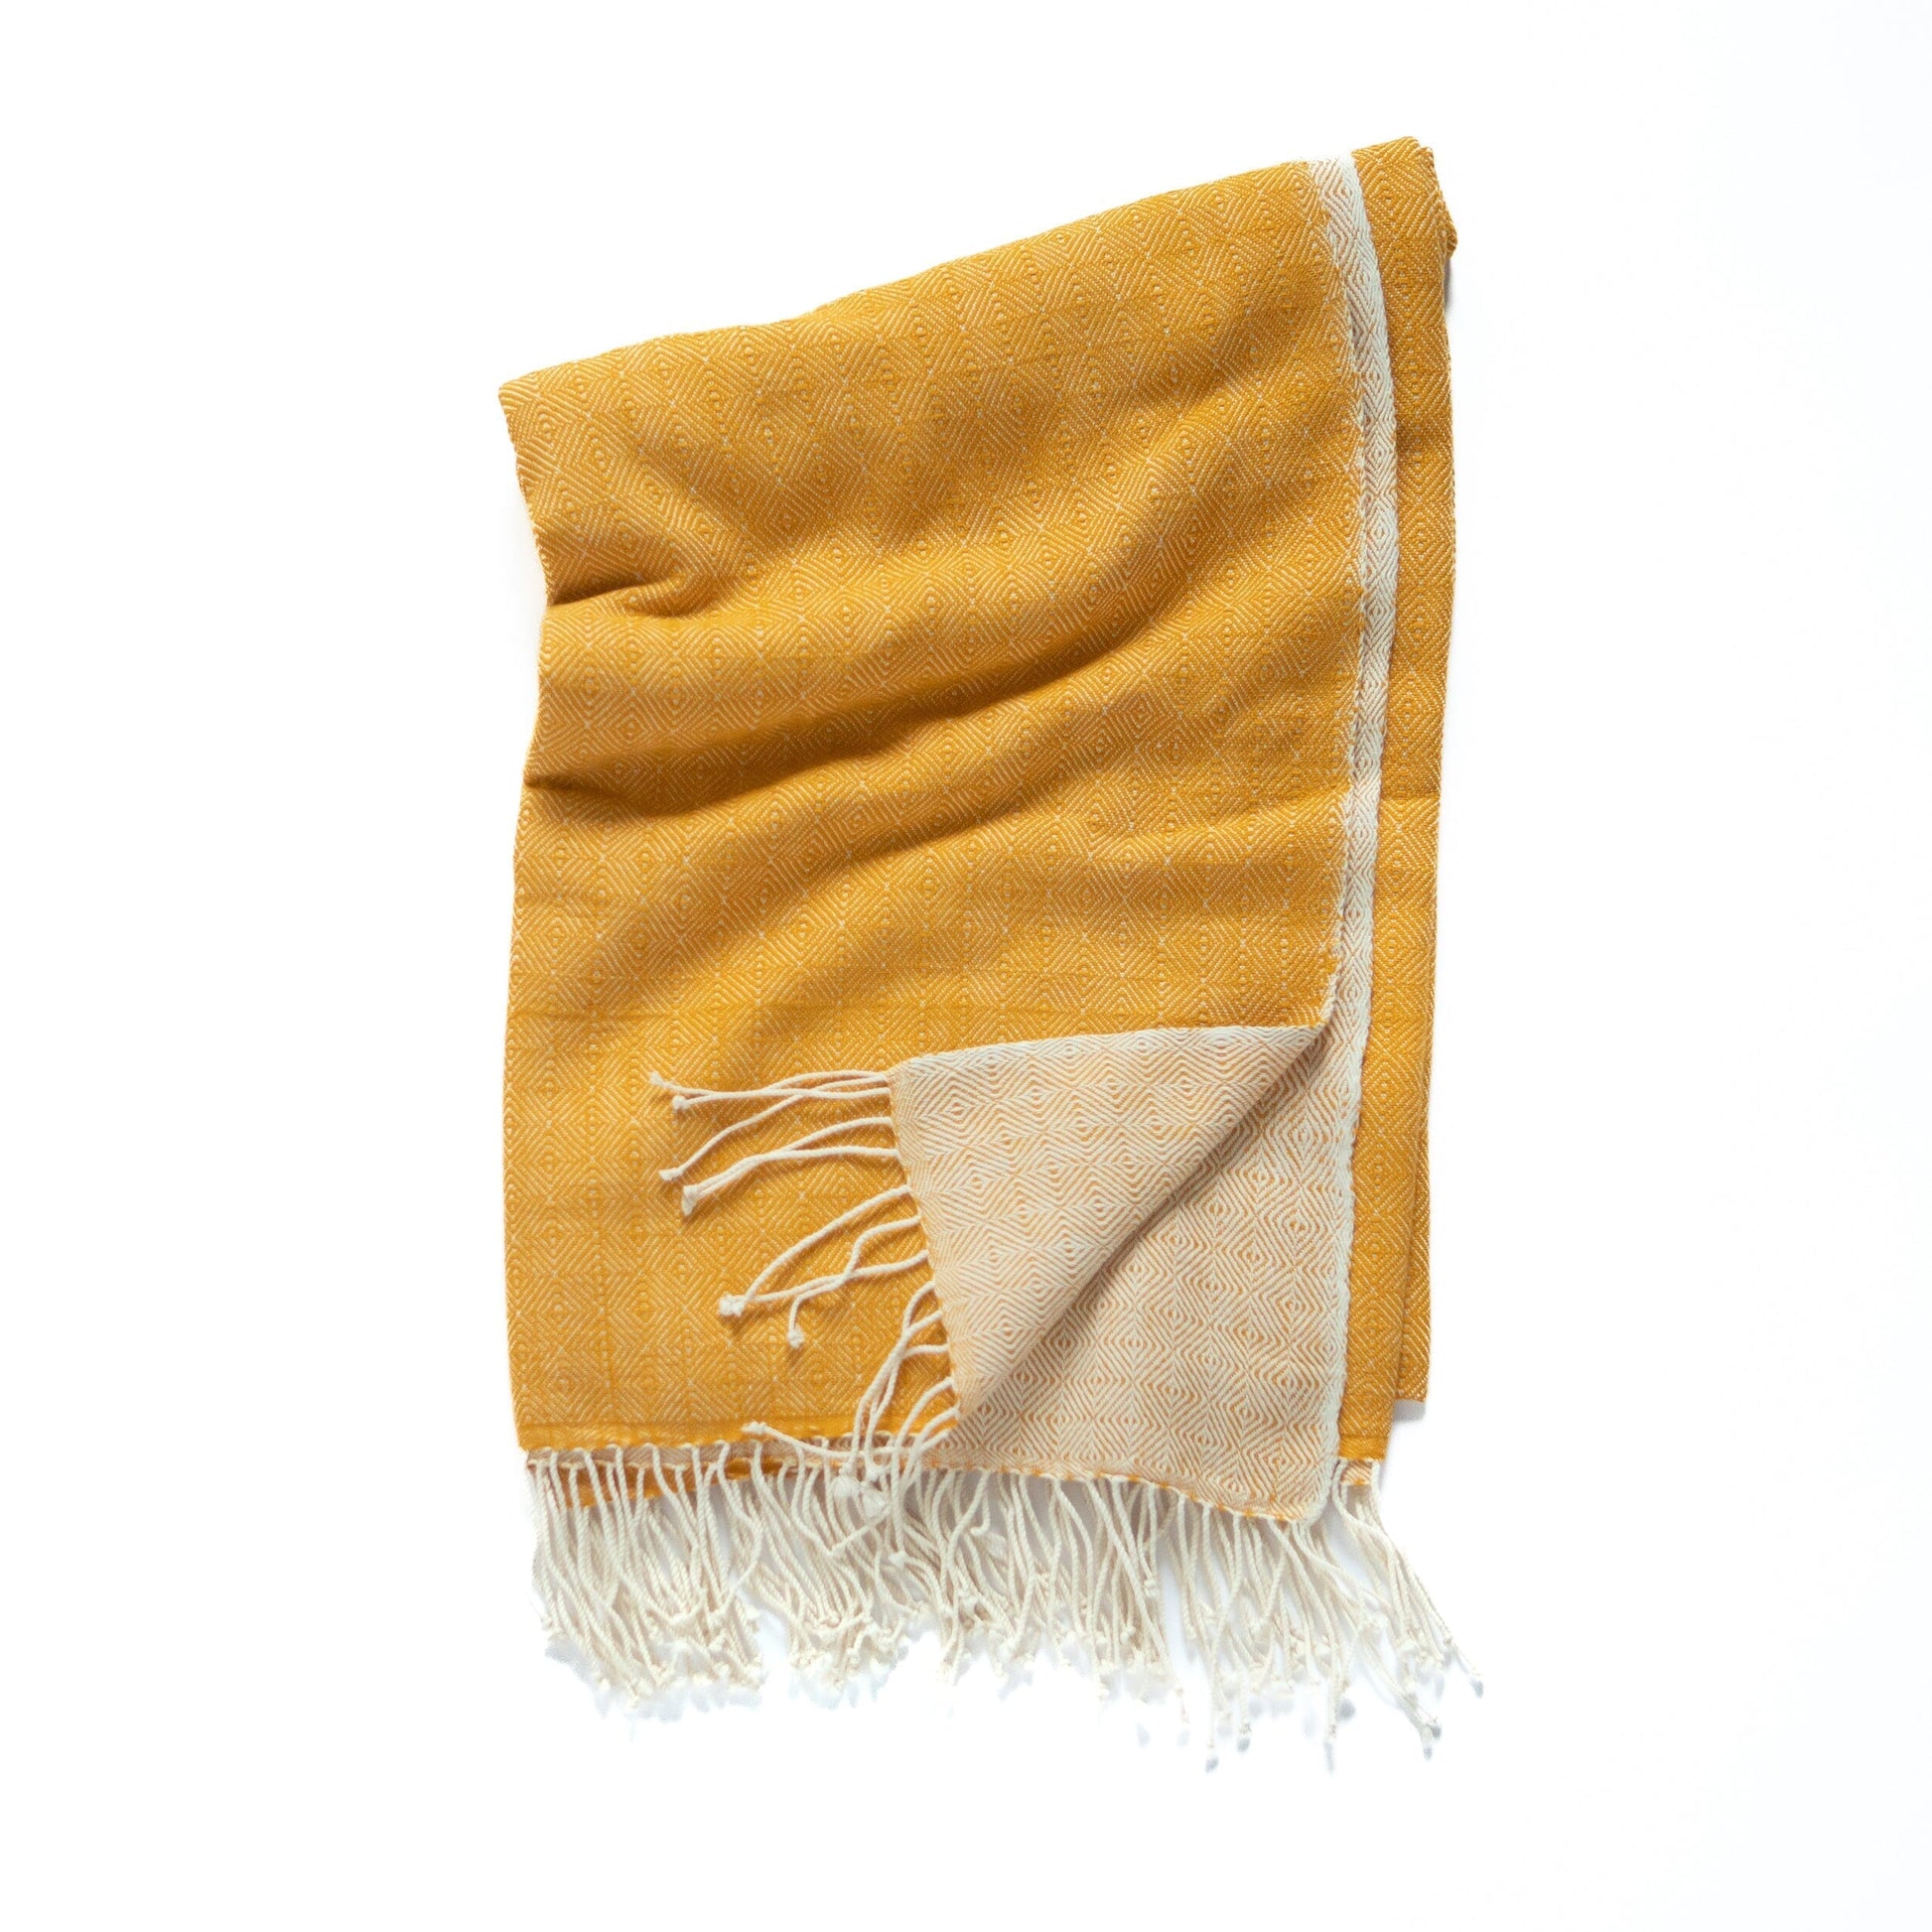 Almaz towel towel sabahar Gold 